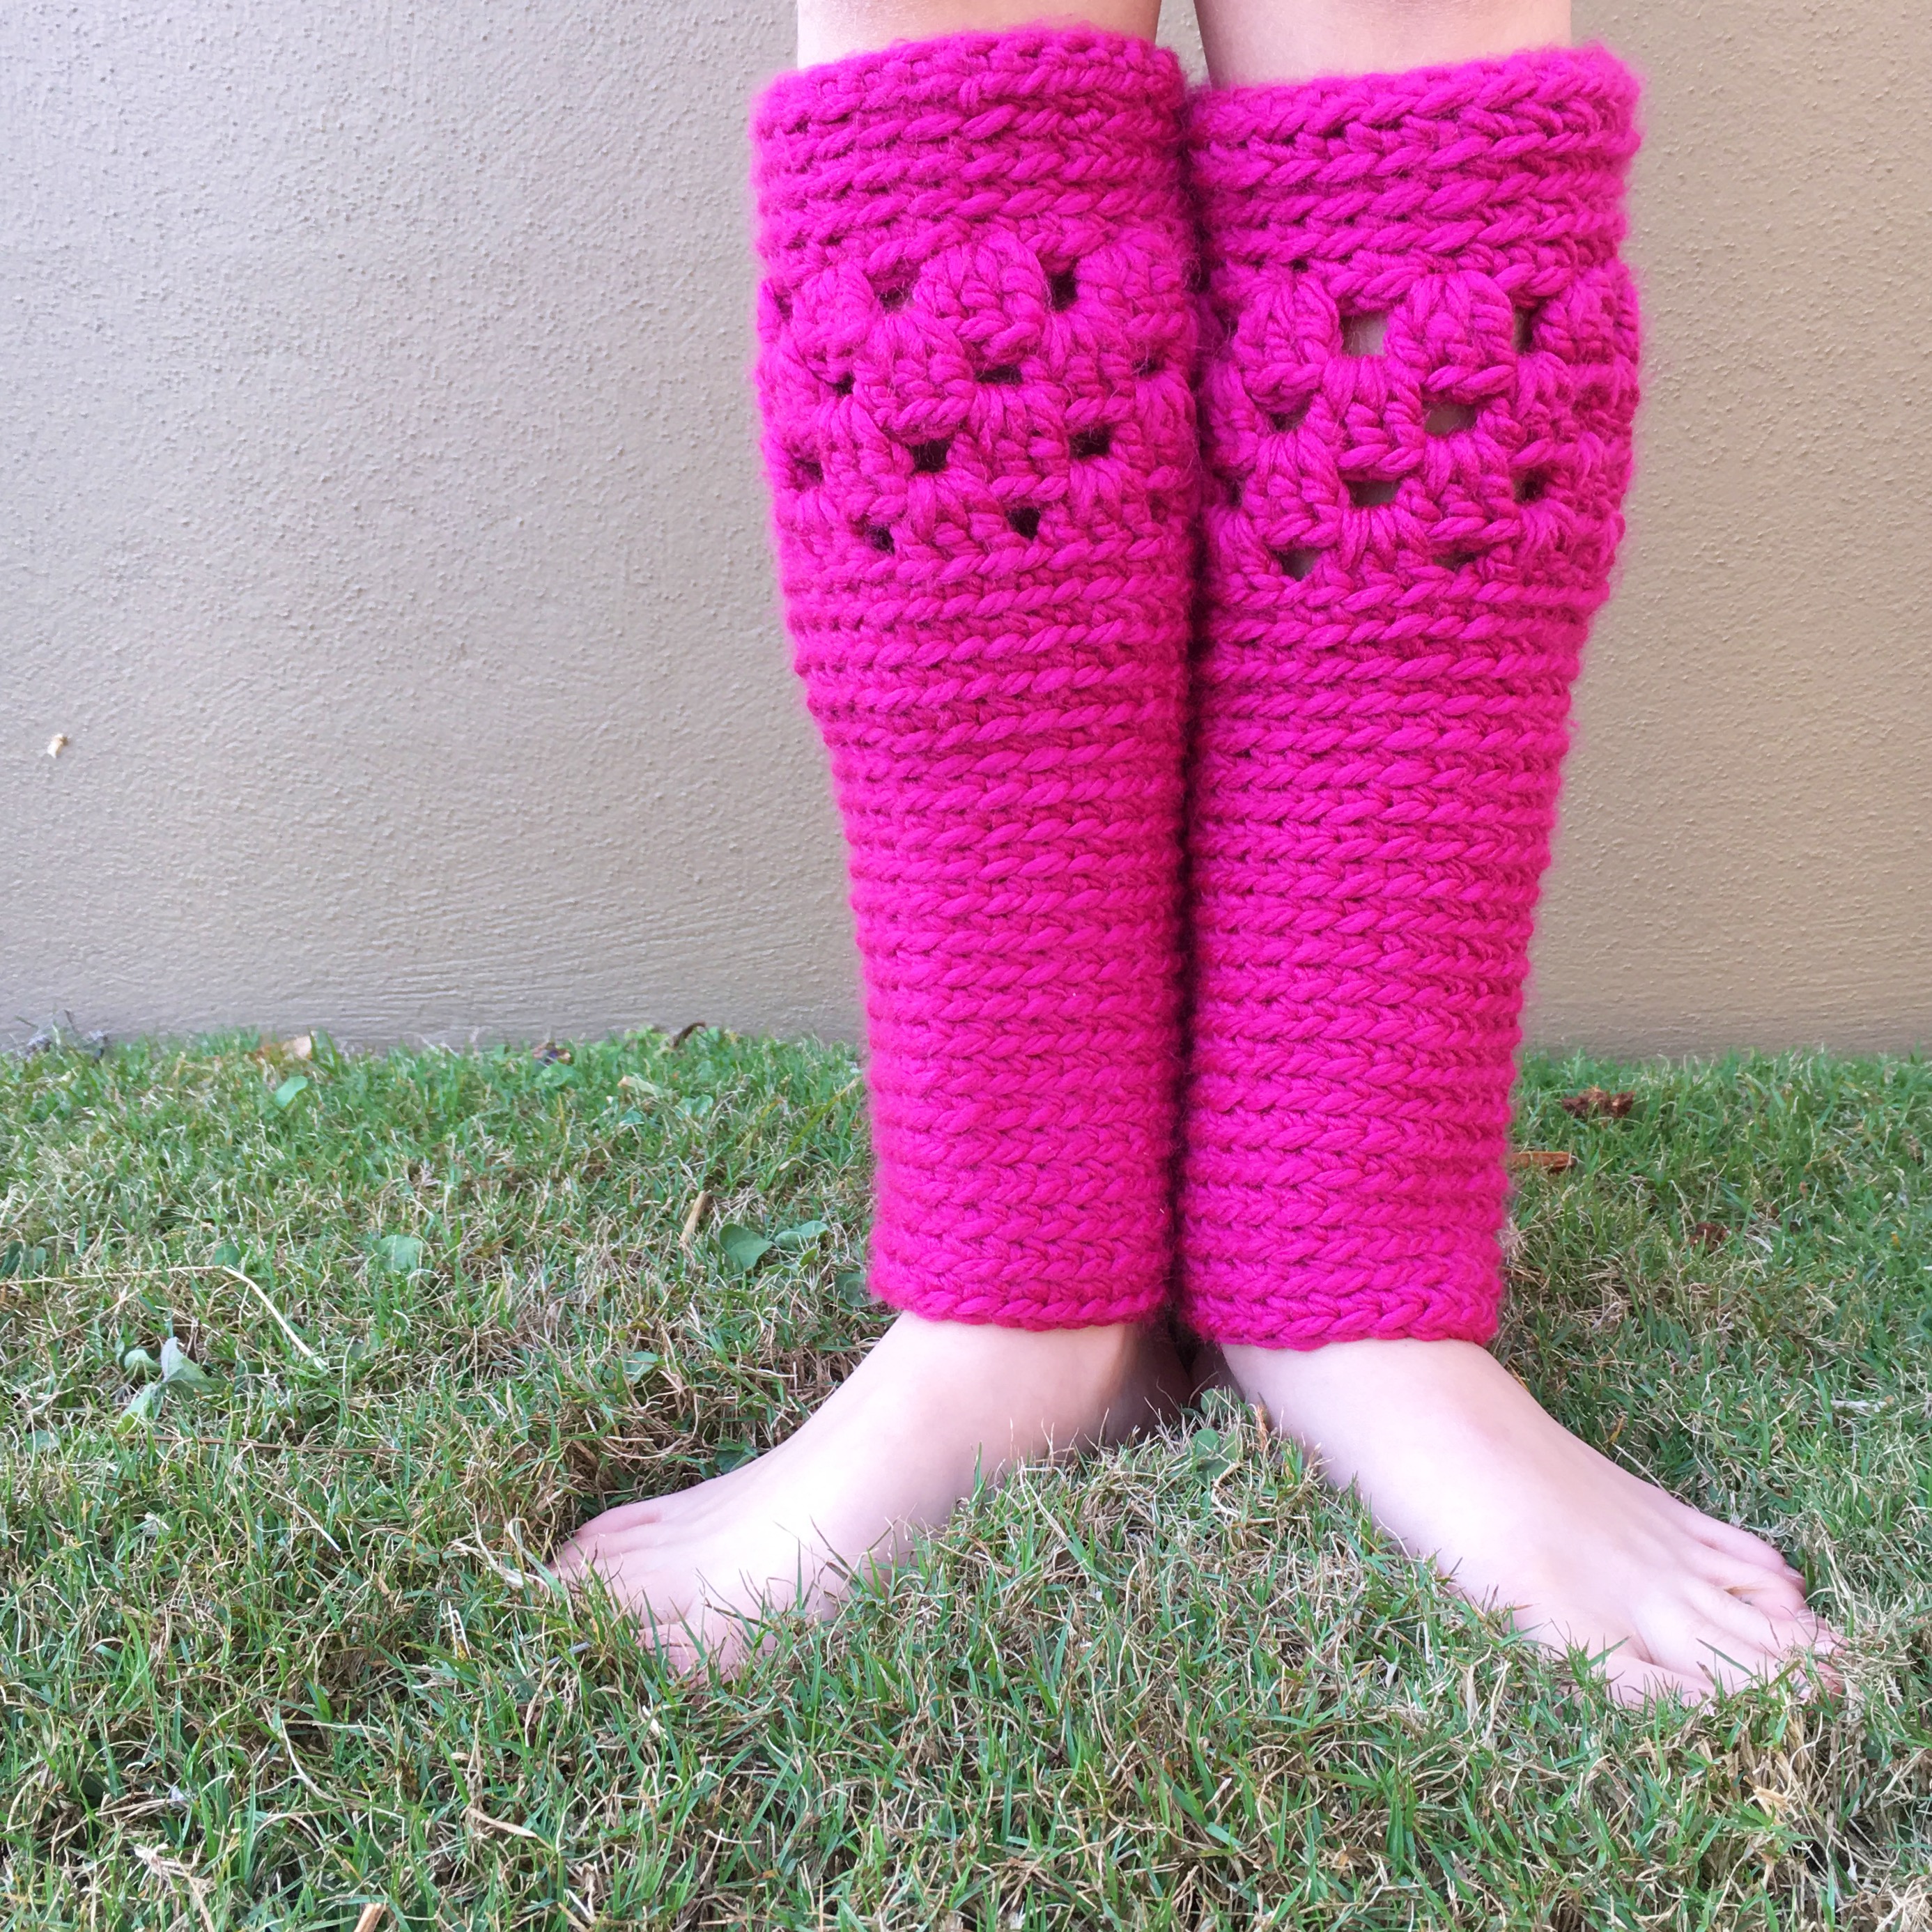 Tutorial: Crochet Leg Warmers • The Crafty Mummy